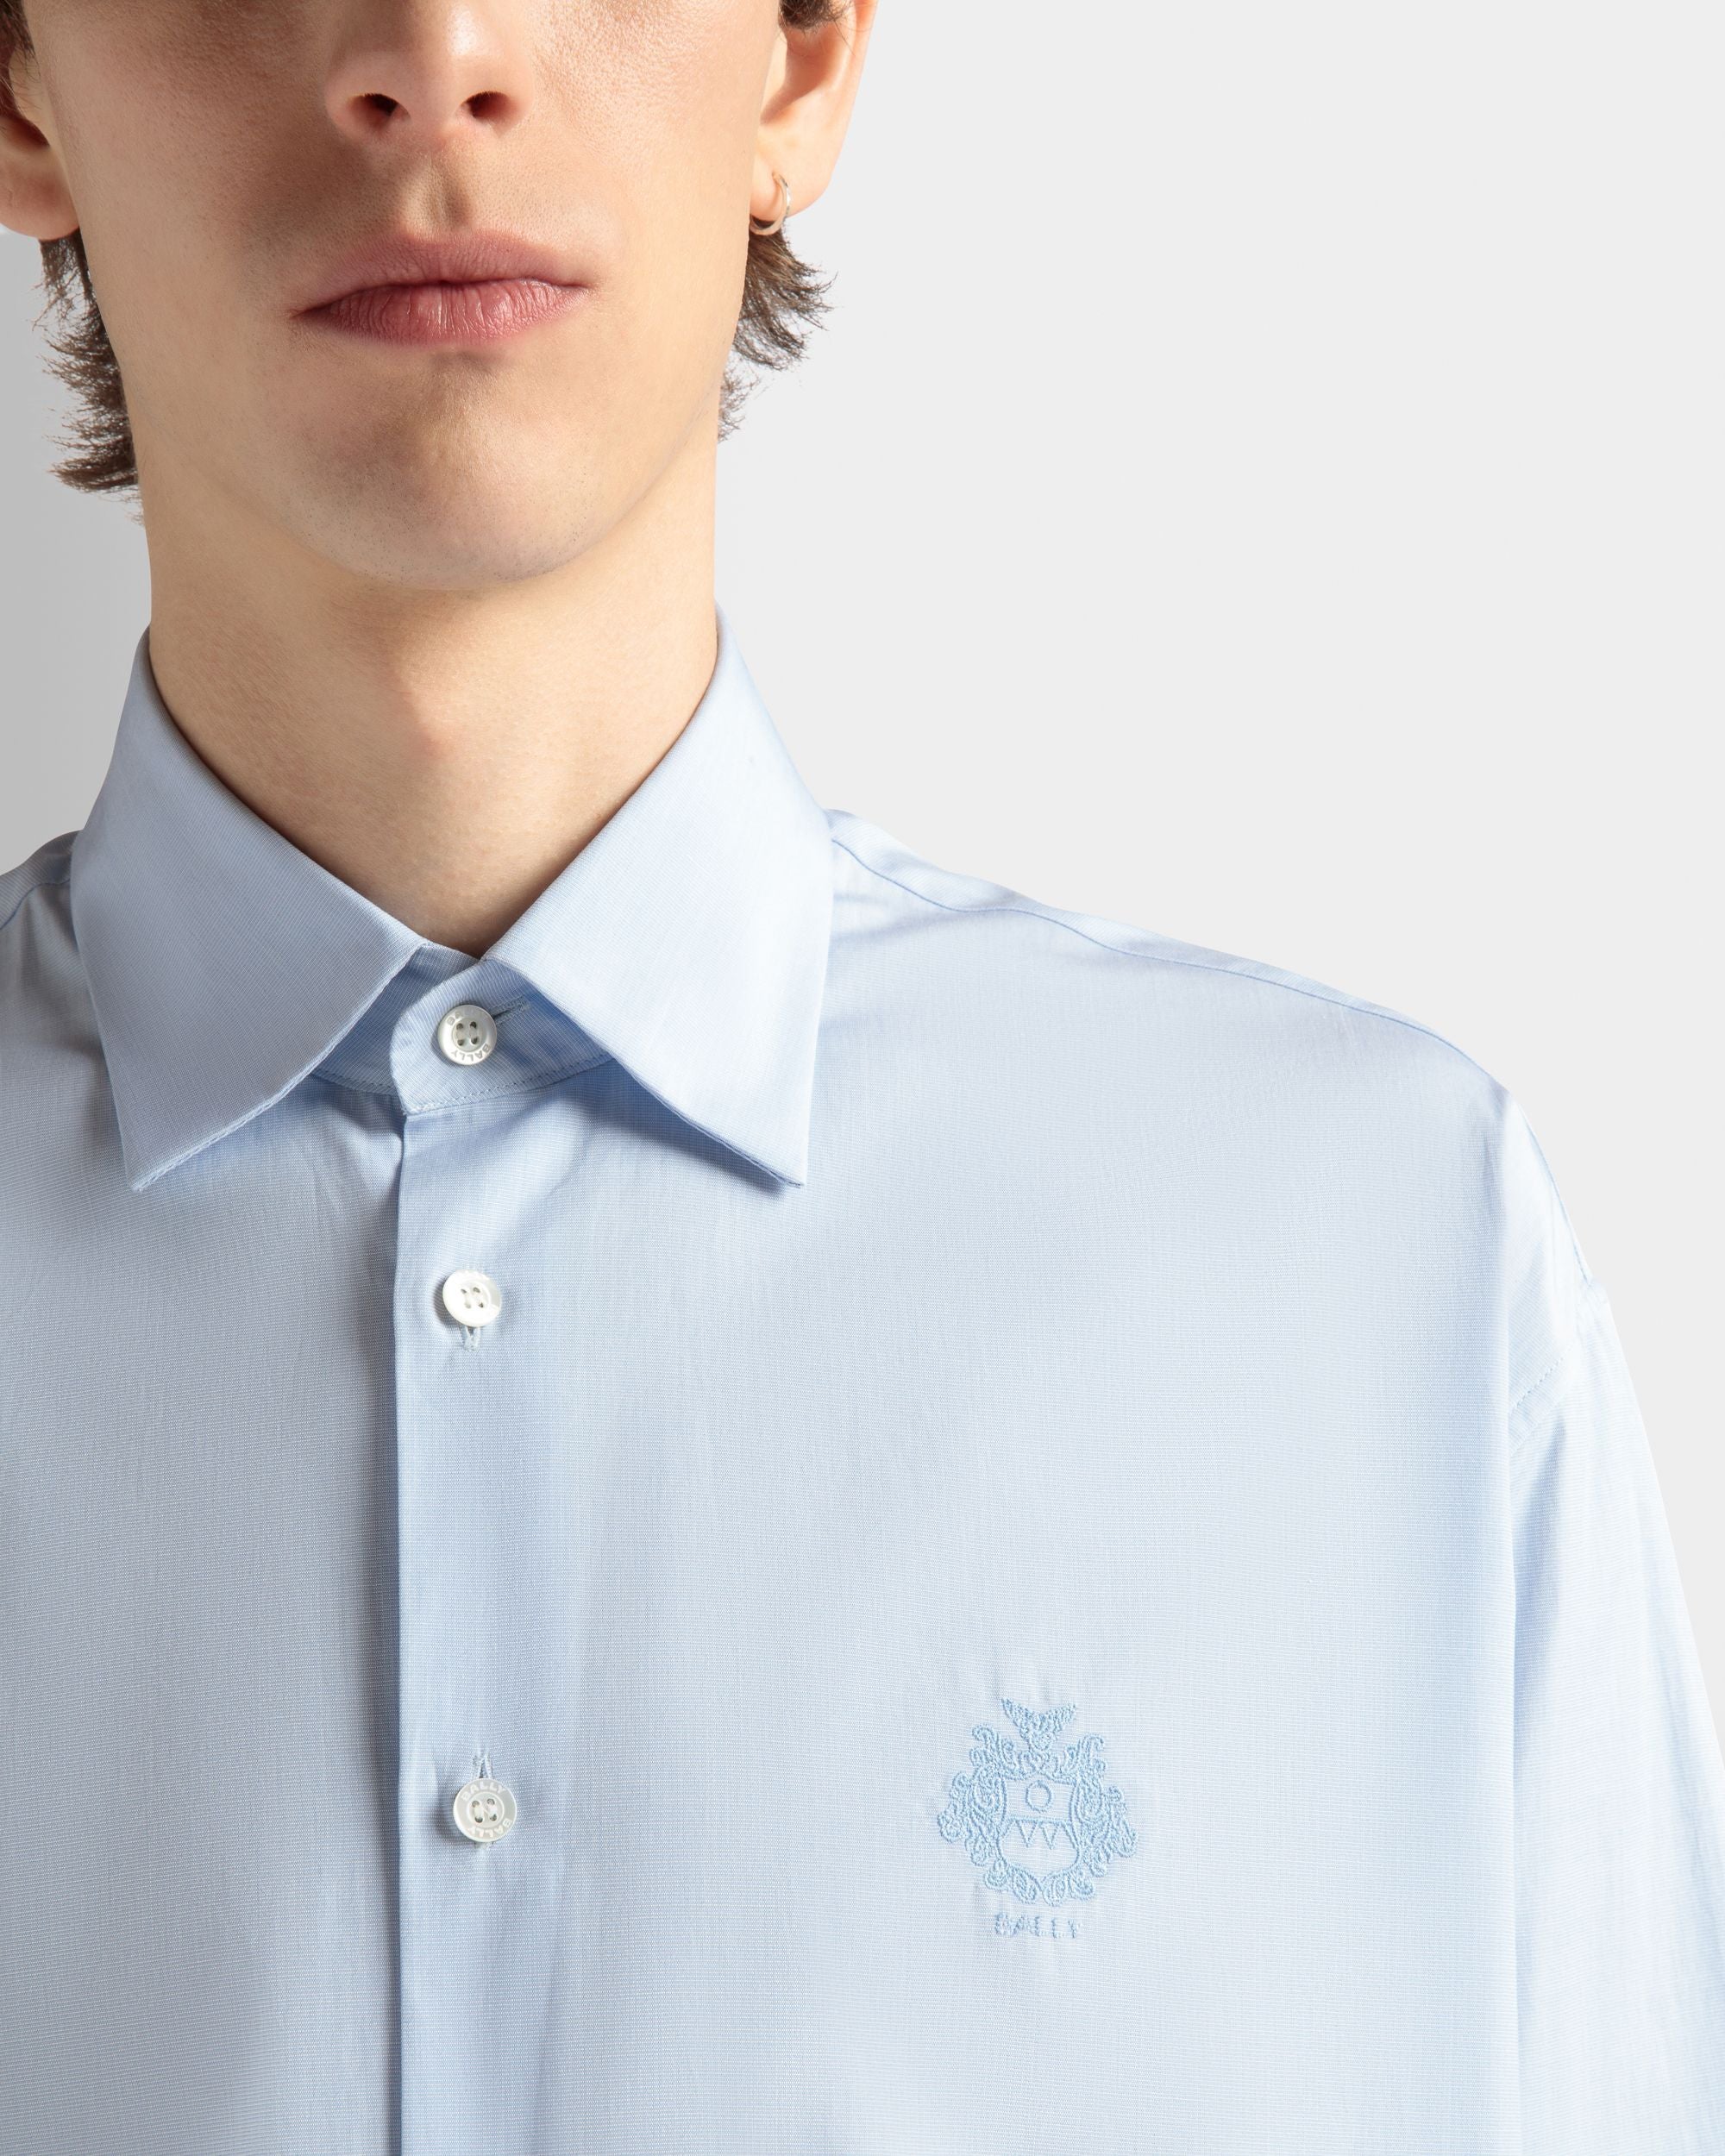 Men's Shirt in Light Blue Cotton | Bally | On Model Detail